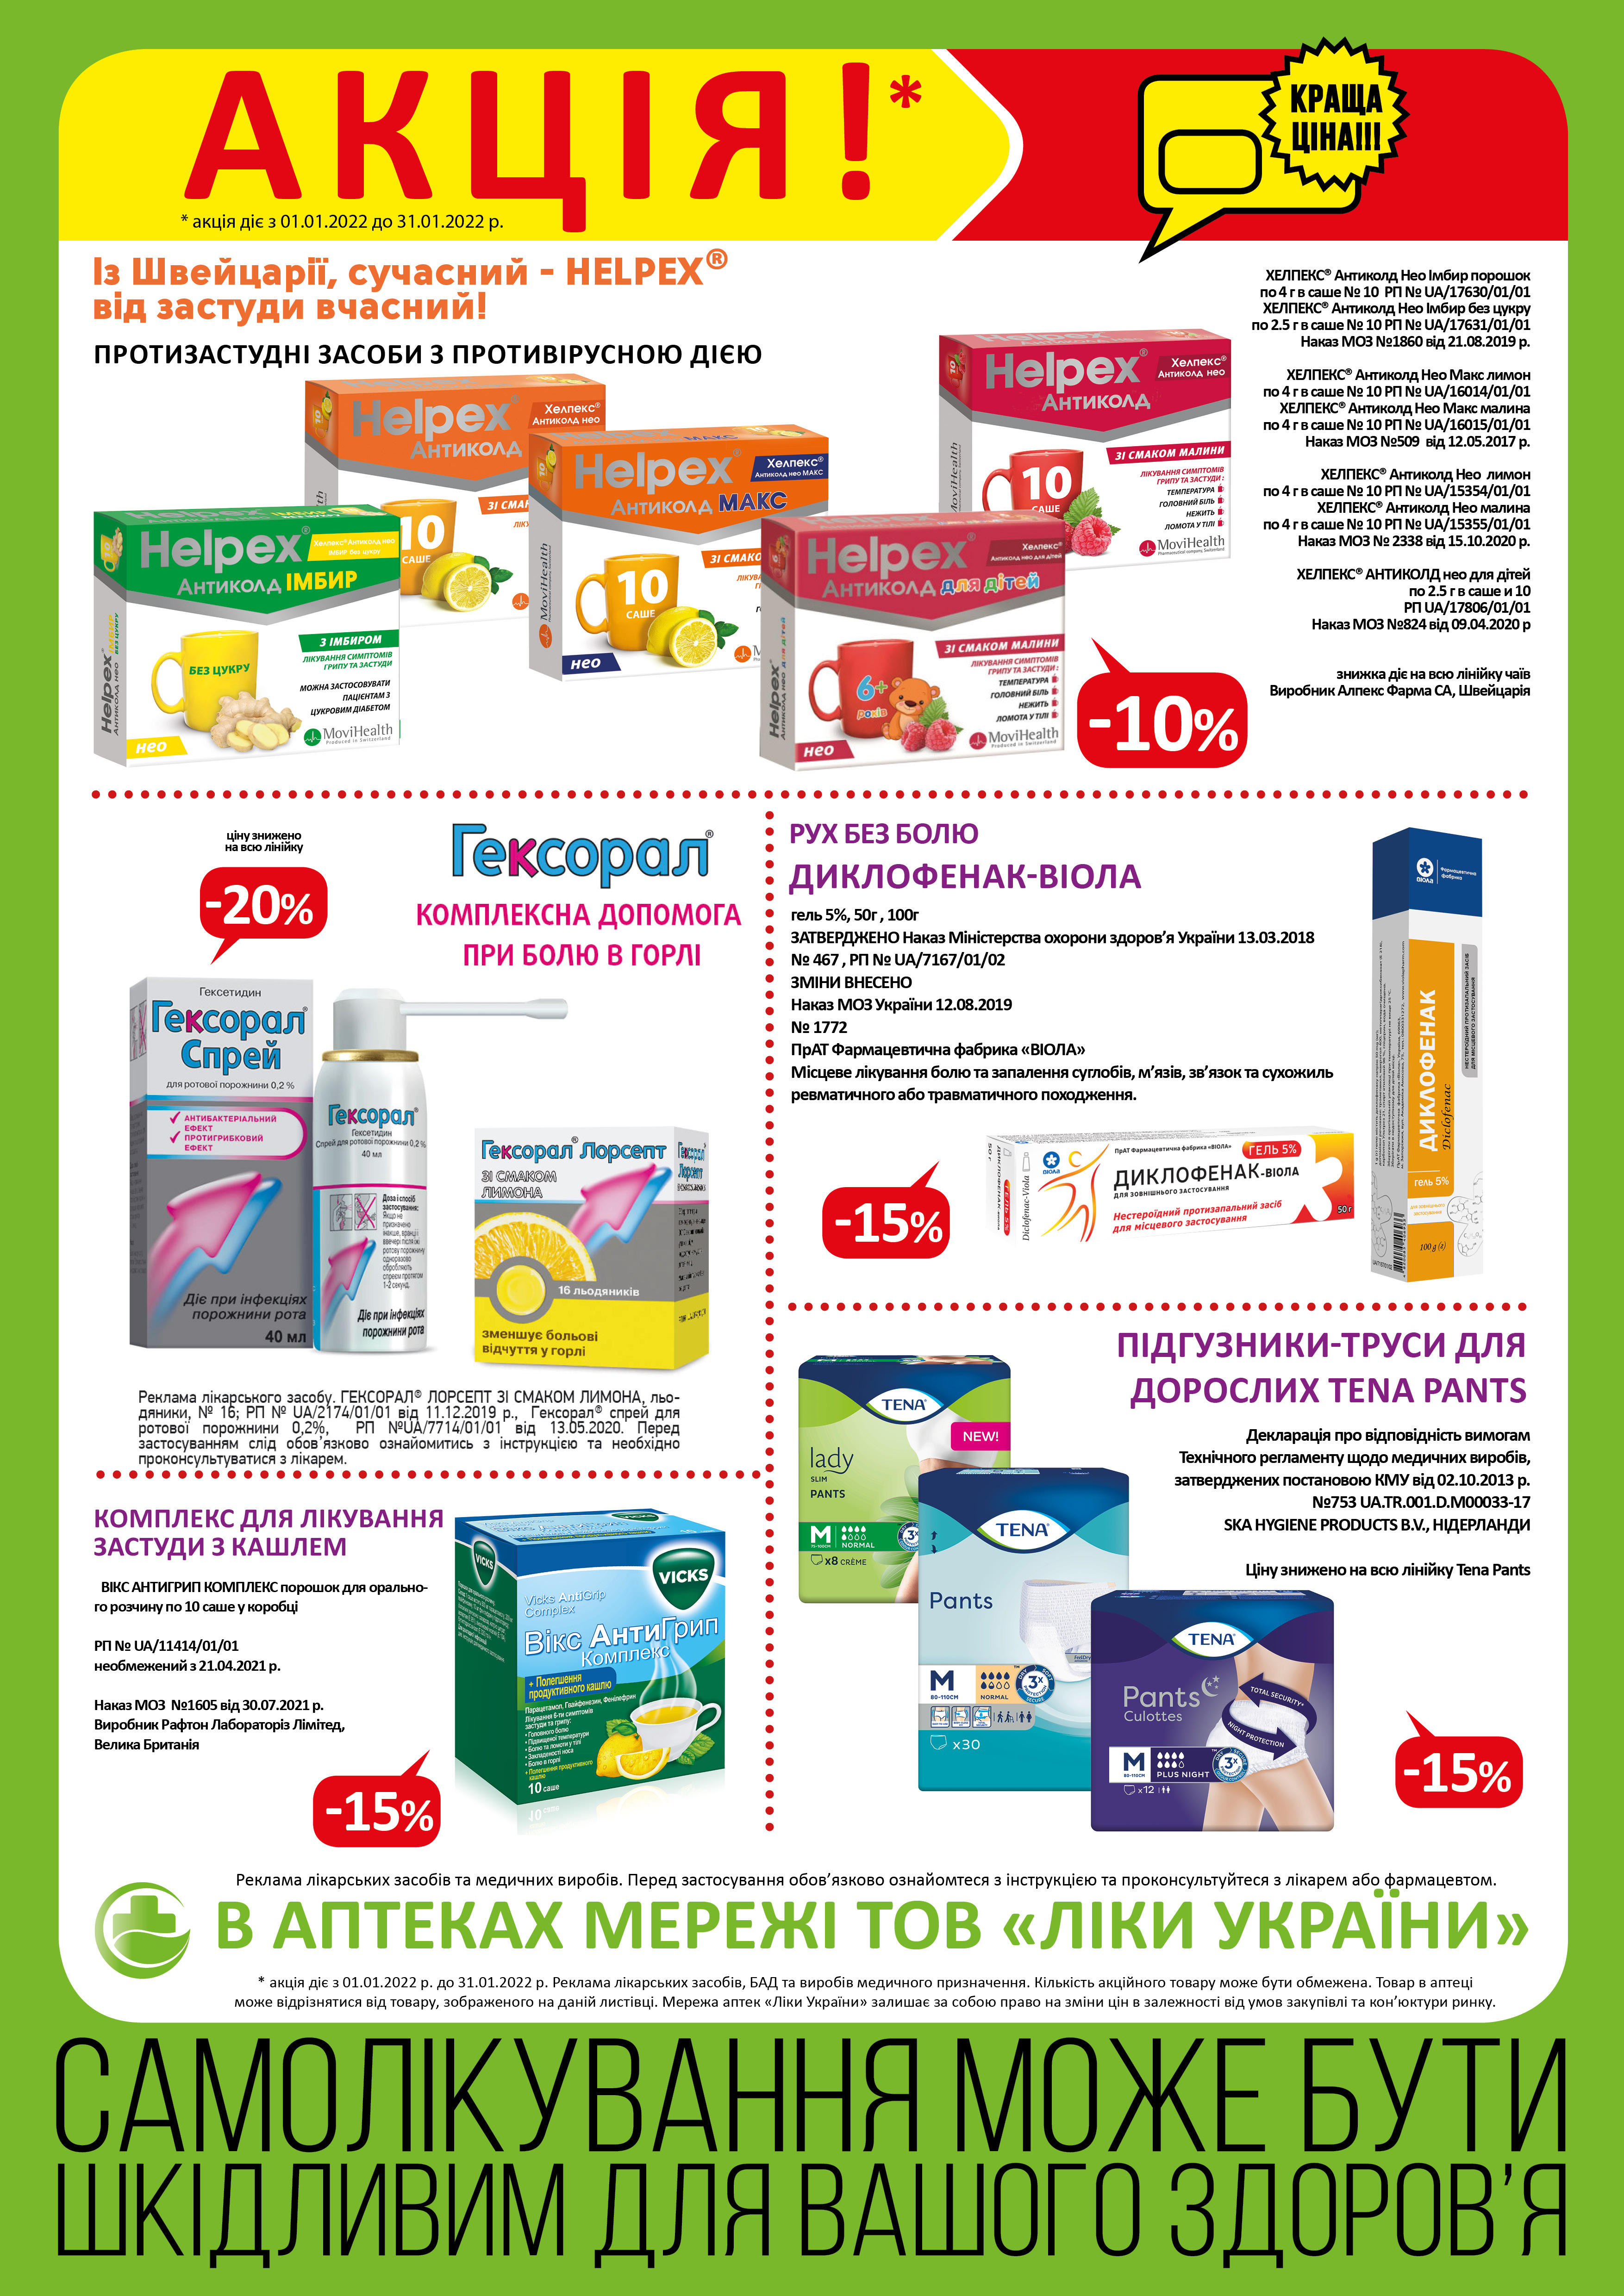 В аптеках мережі ТОВ "Ліки України" з 01.01 по 31.01 діє акція.